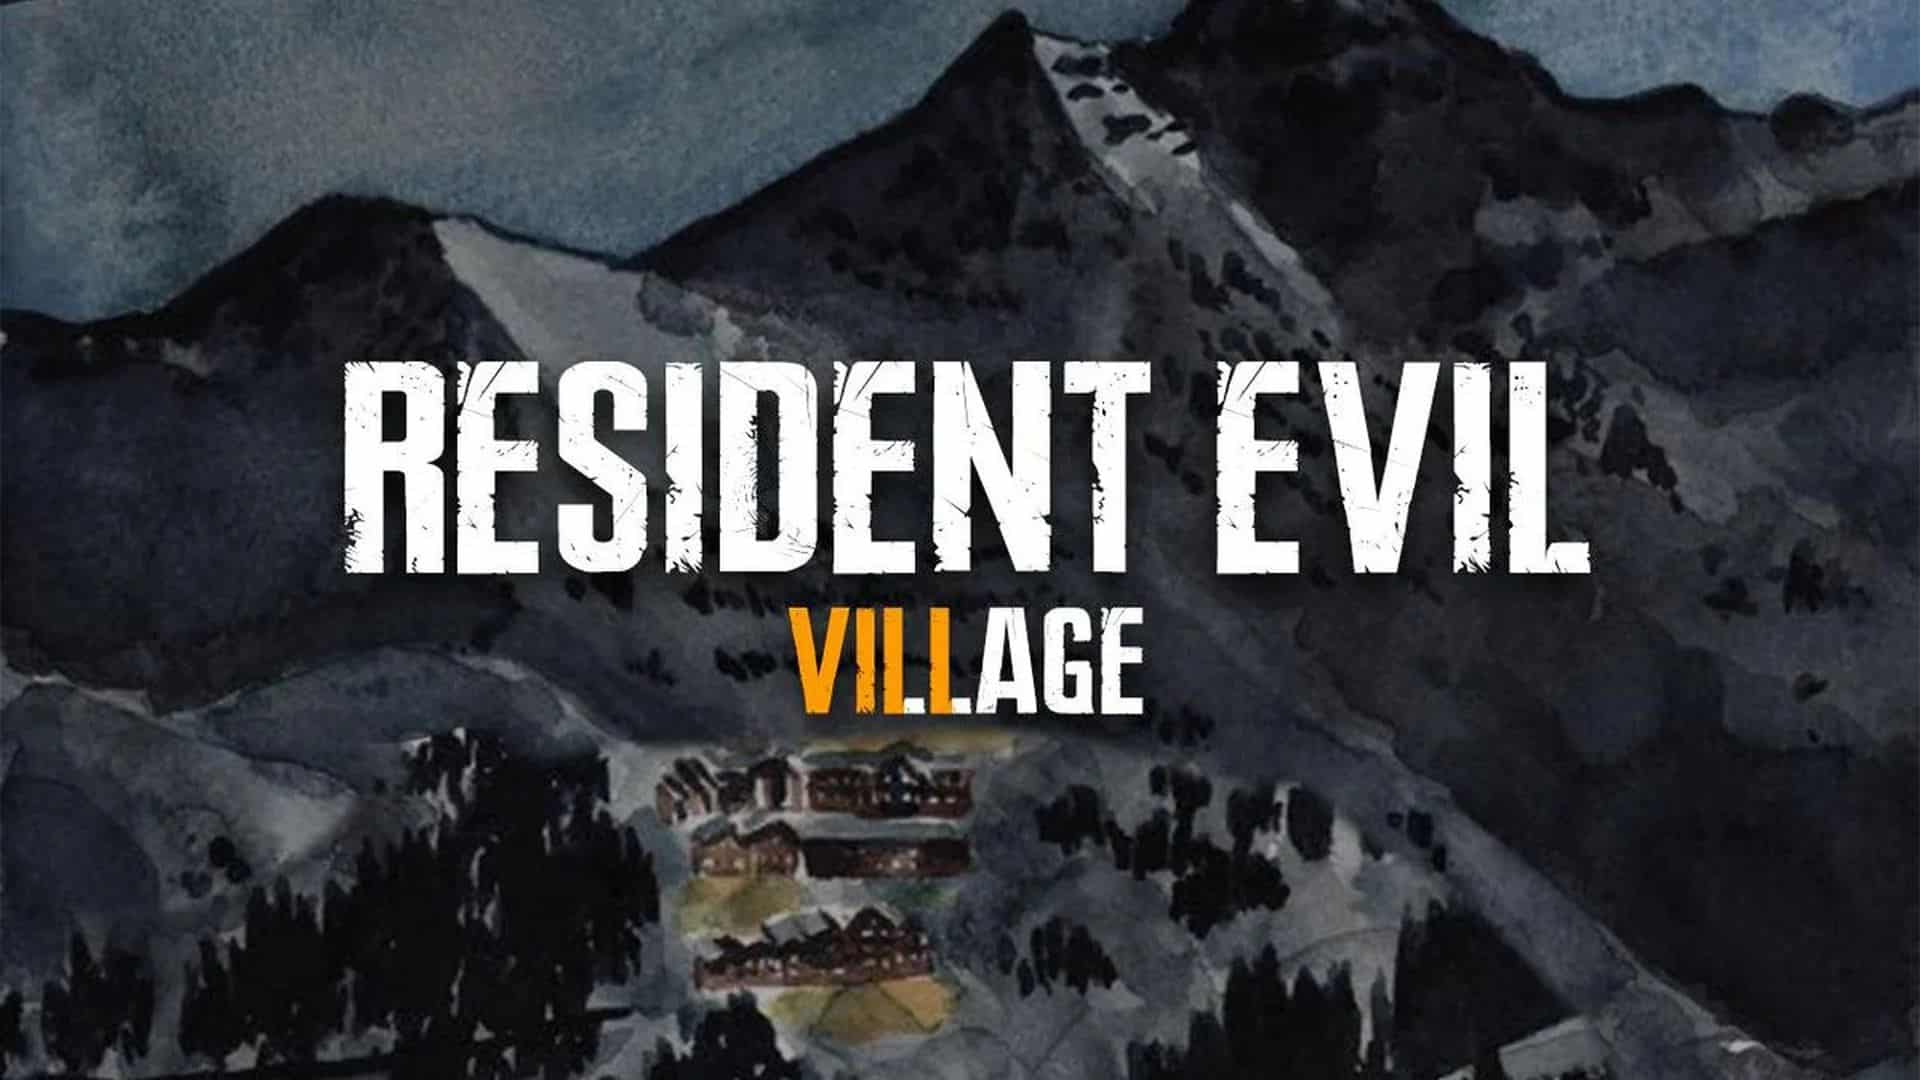 Resident-Evil-8-Village